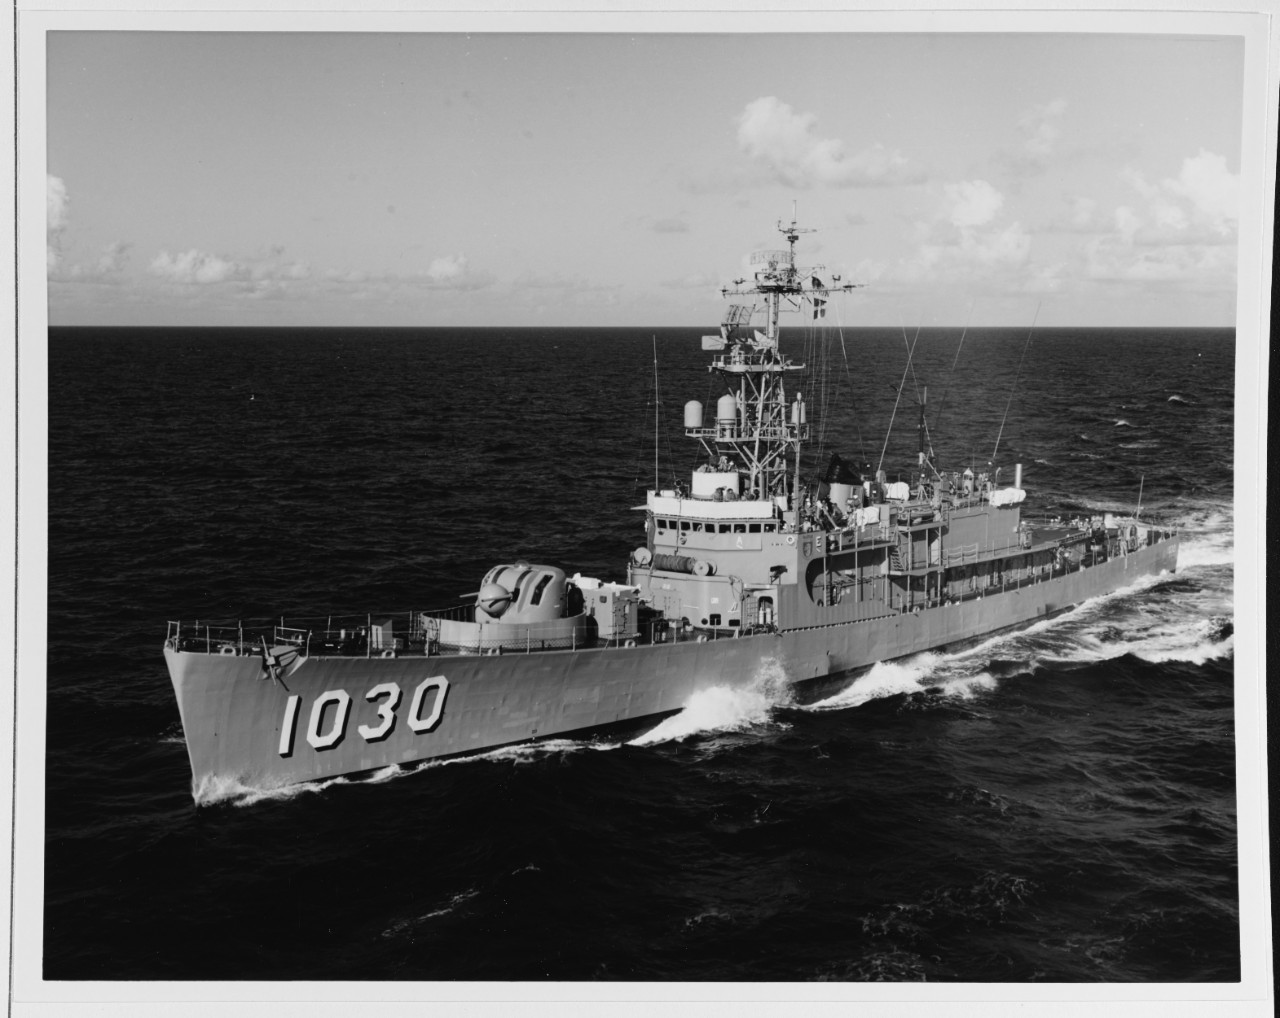 USS JOSEPH K. TAUSSIG (DE-1030)